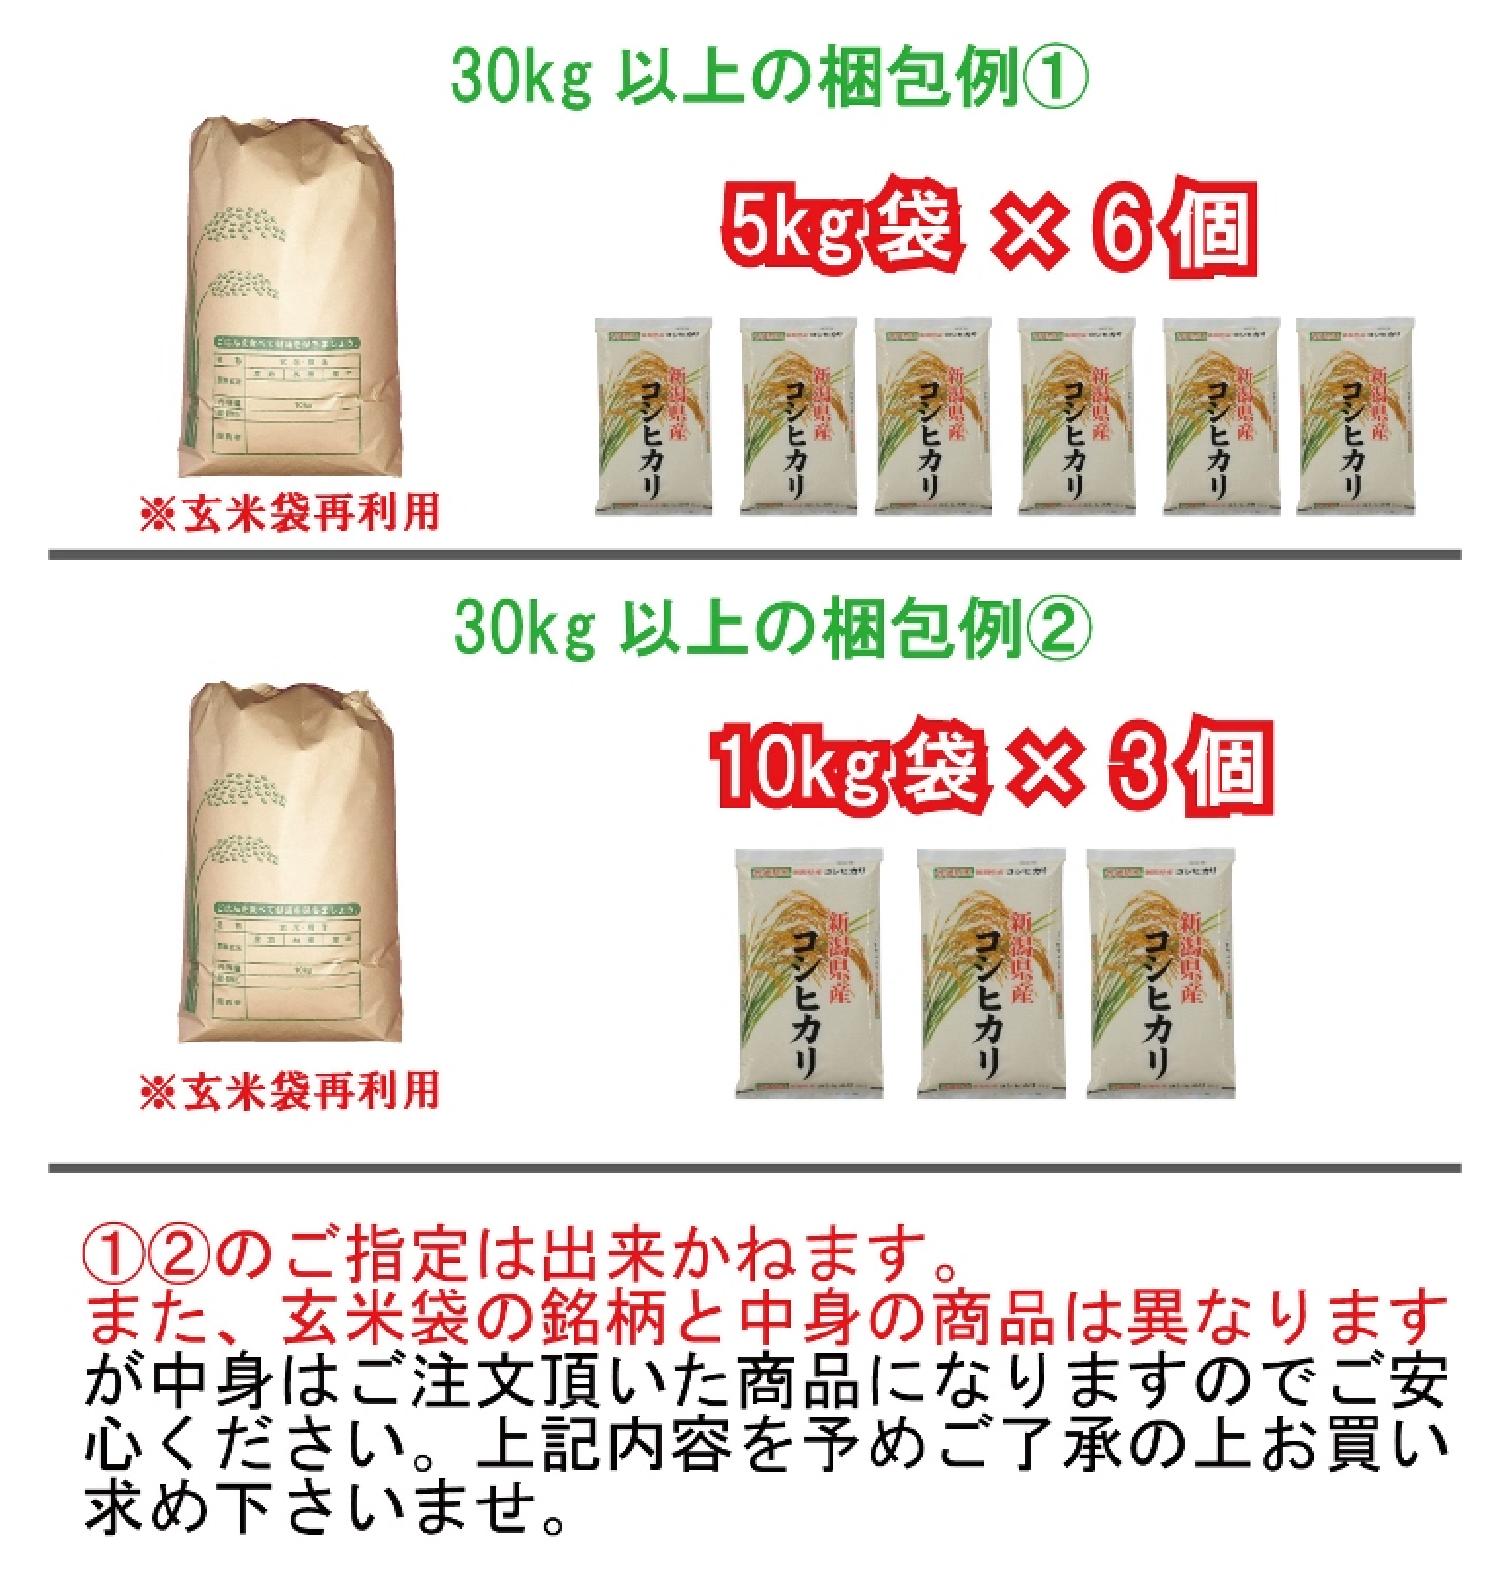 無洗米 新潟産 こしいぶき 5kg×3 二重包装可 :FD6510071-4946:まるっと